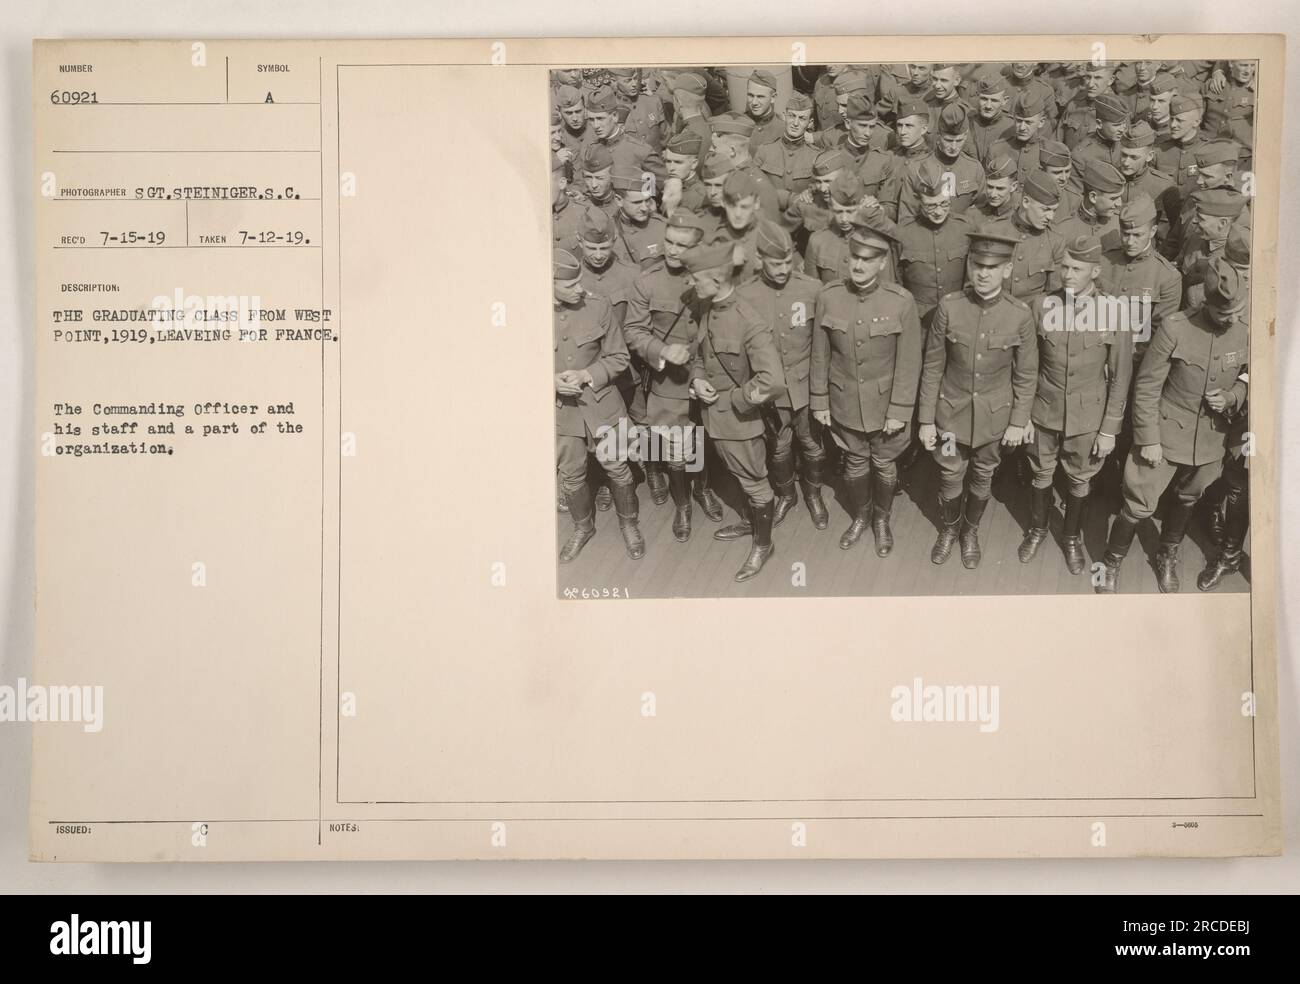 Das Foto zeigt die Absolventen von West Point im Jahr 1919, die nach Frankreich abreisen. Der kommandierende Offizier, seine Mitarbeiter und ein Teil des Unternehmens sind auf dem Bild zu sehen. Das Foto wurde am 12. Juli 1919 vom Fotografen S.C. aufgenommen Steiniger und wurde unter dem Beschreibungssymbol MINDER 60921 FOTOGRAF SOT ausgestellt. RECO 7-15-19 GENOMMEN 7-12-19. Stockfoto